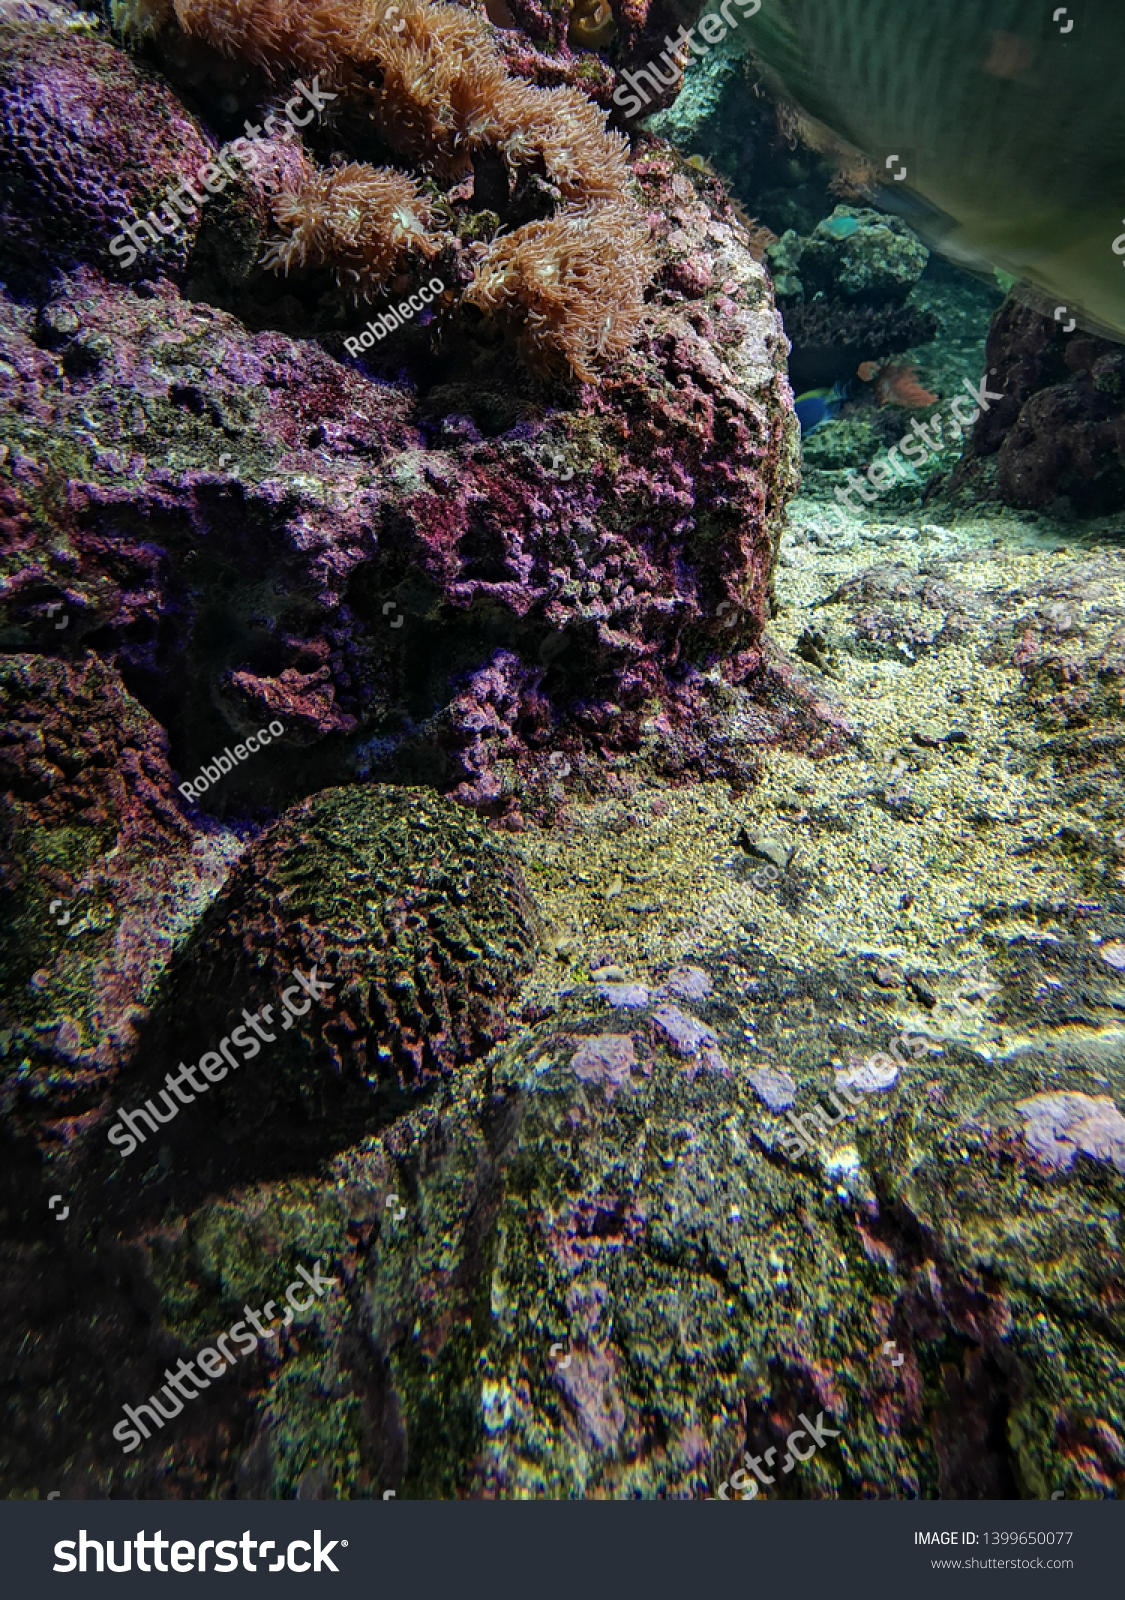 Aquarium and Marine organisms, marine life #1399650077